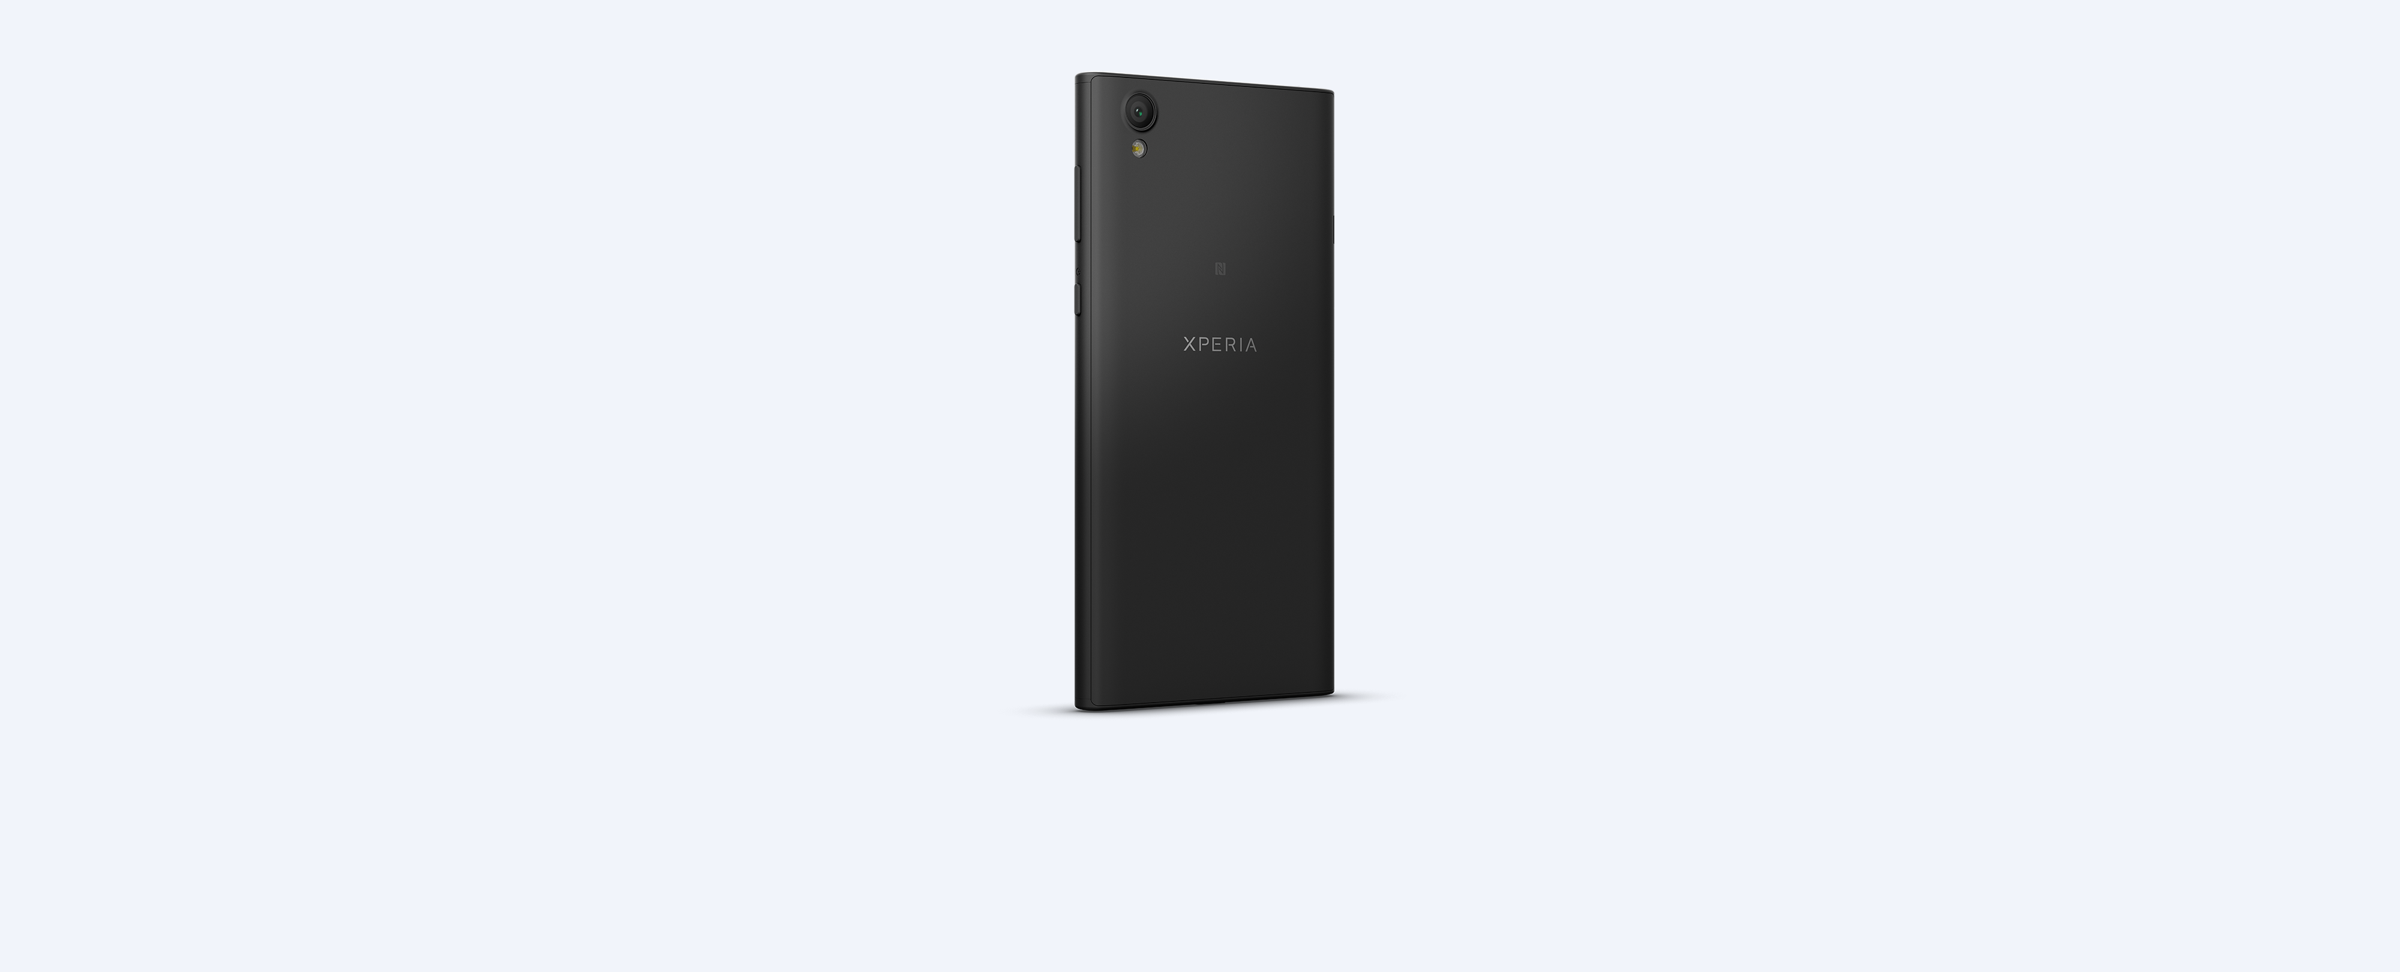 تصميم هاتف Xperia L1 الجديد من شركة سوني | بوابة الموبايلات